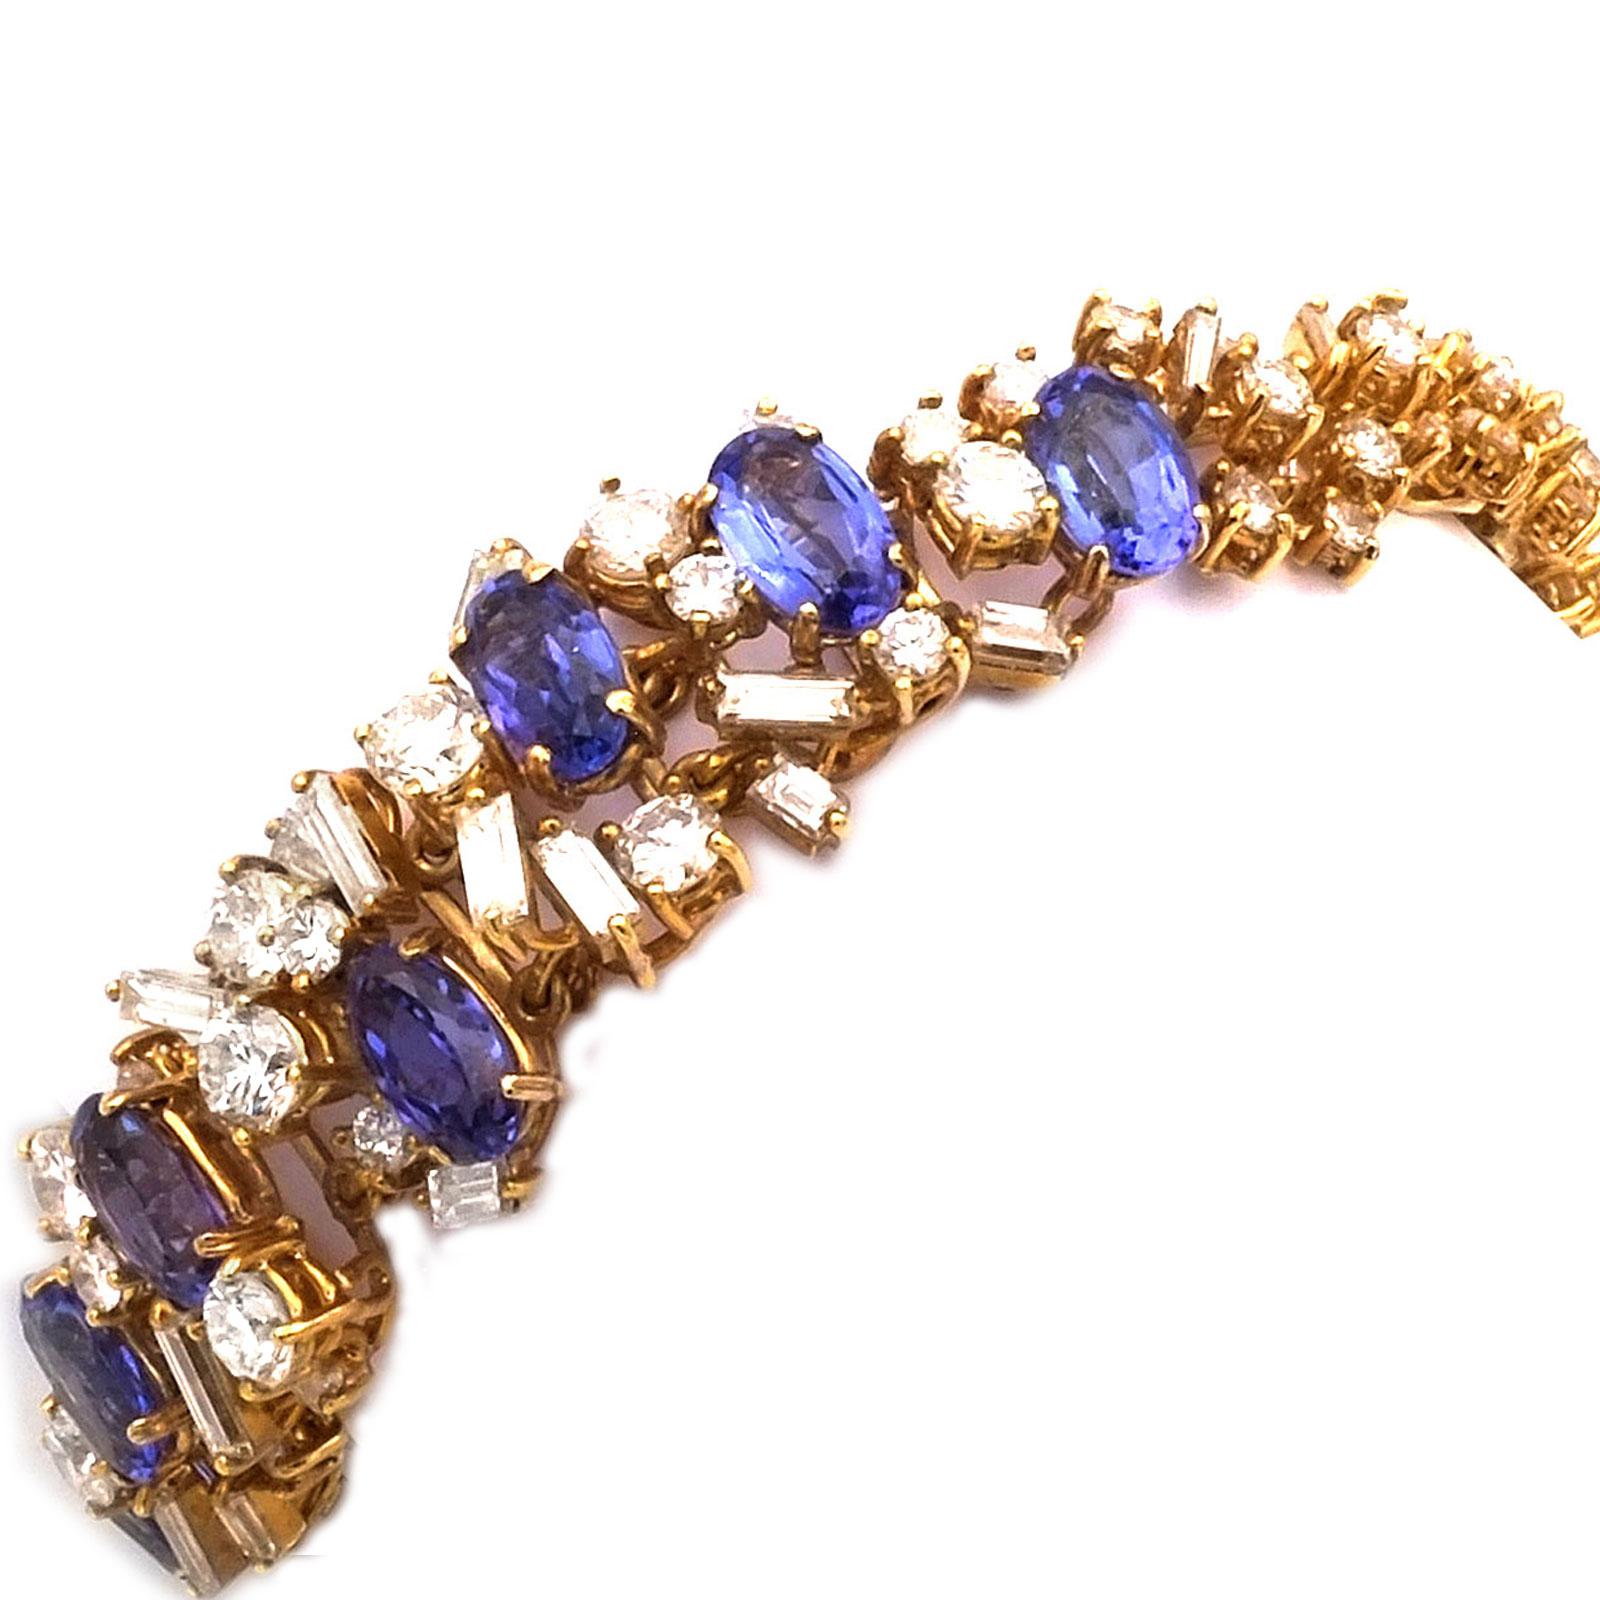 Bracelet de tanzanite et de diamants de 12 carats en or 18K, vers 1970

Bracelet floral très particulier, en or haut carat, ajouré et serti de 8 tanzanites bleu-violet brillantes d'un total de 7,65 ct, entourées de 121 diamants brillants et